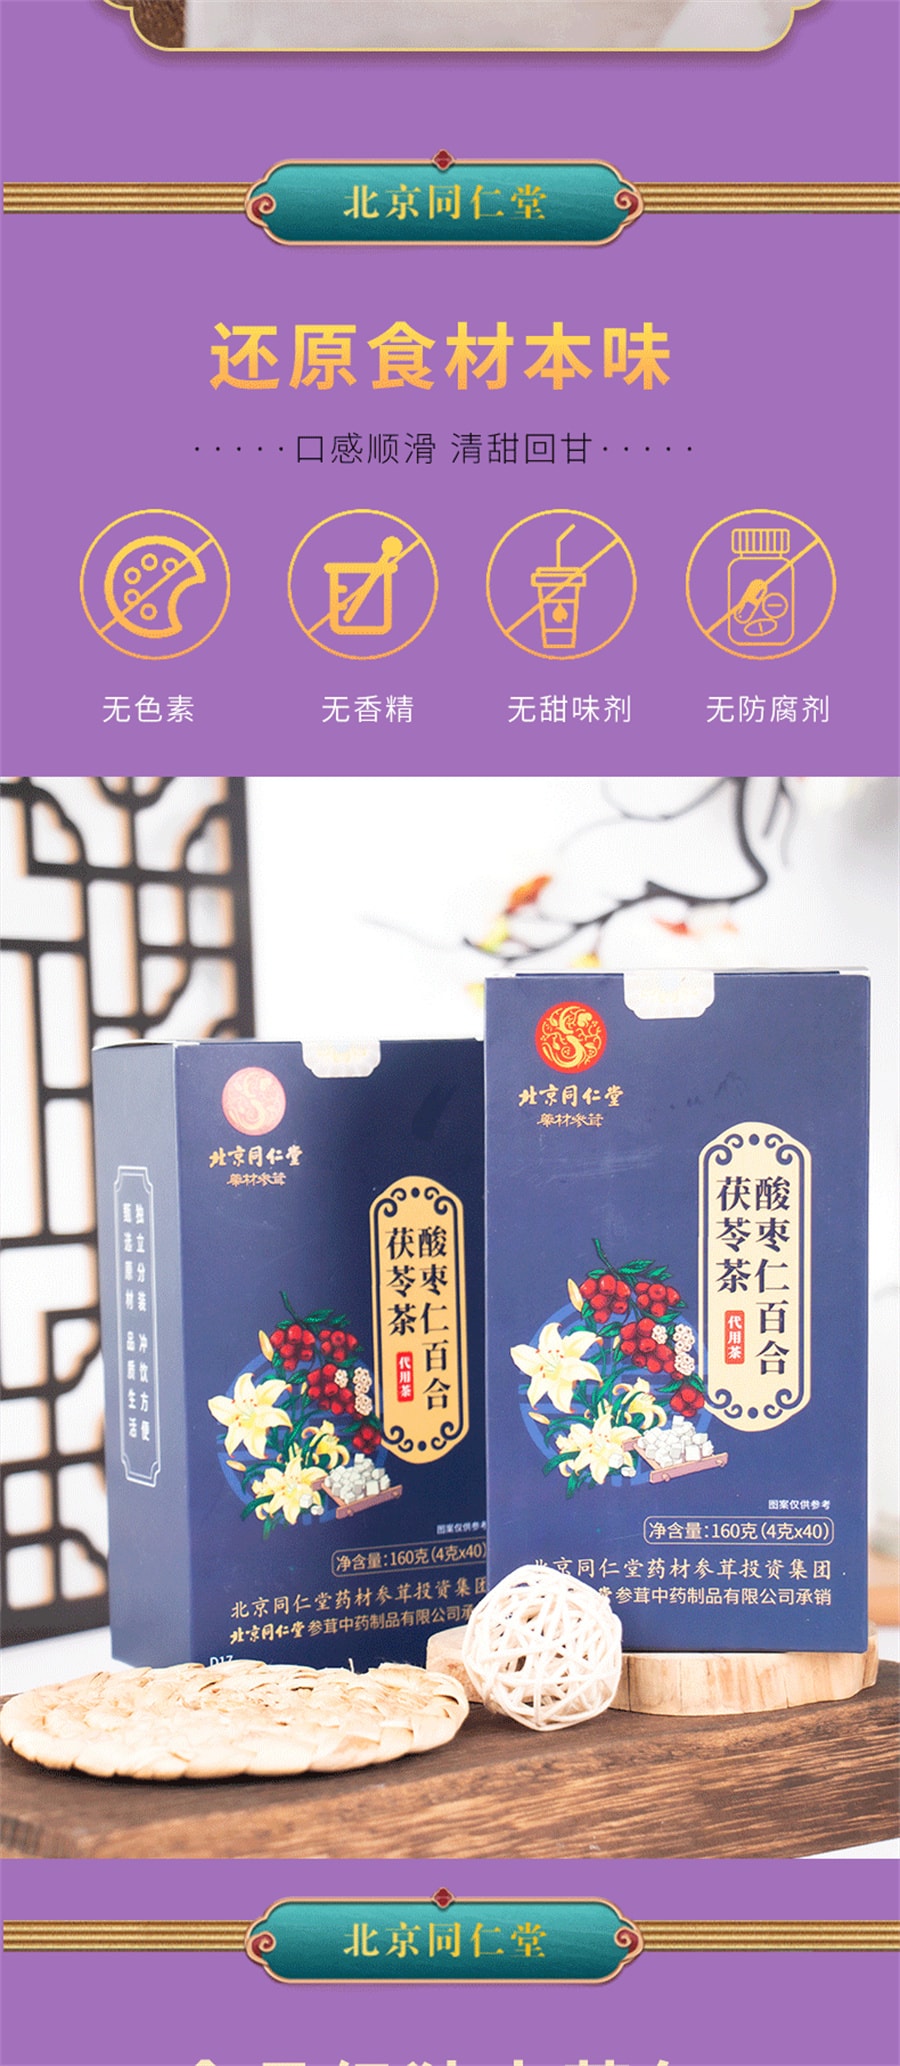 北京同仁堂 酸枣仁百合茯苓茶睡眠茶晚安茶 茯苓酸枣仁茶  160g/盒(4g*40小包)